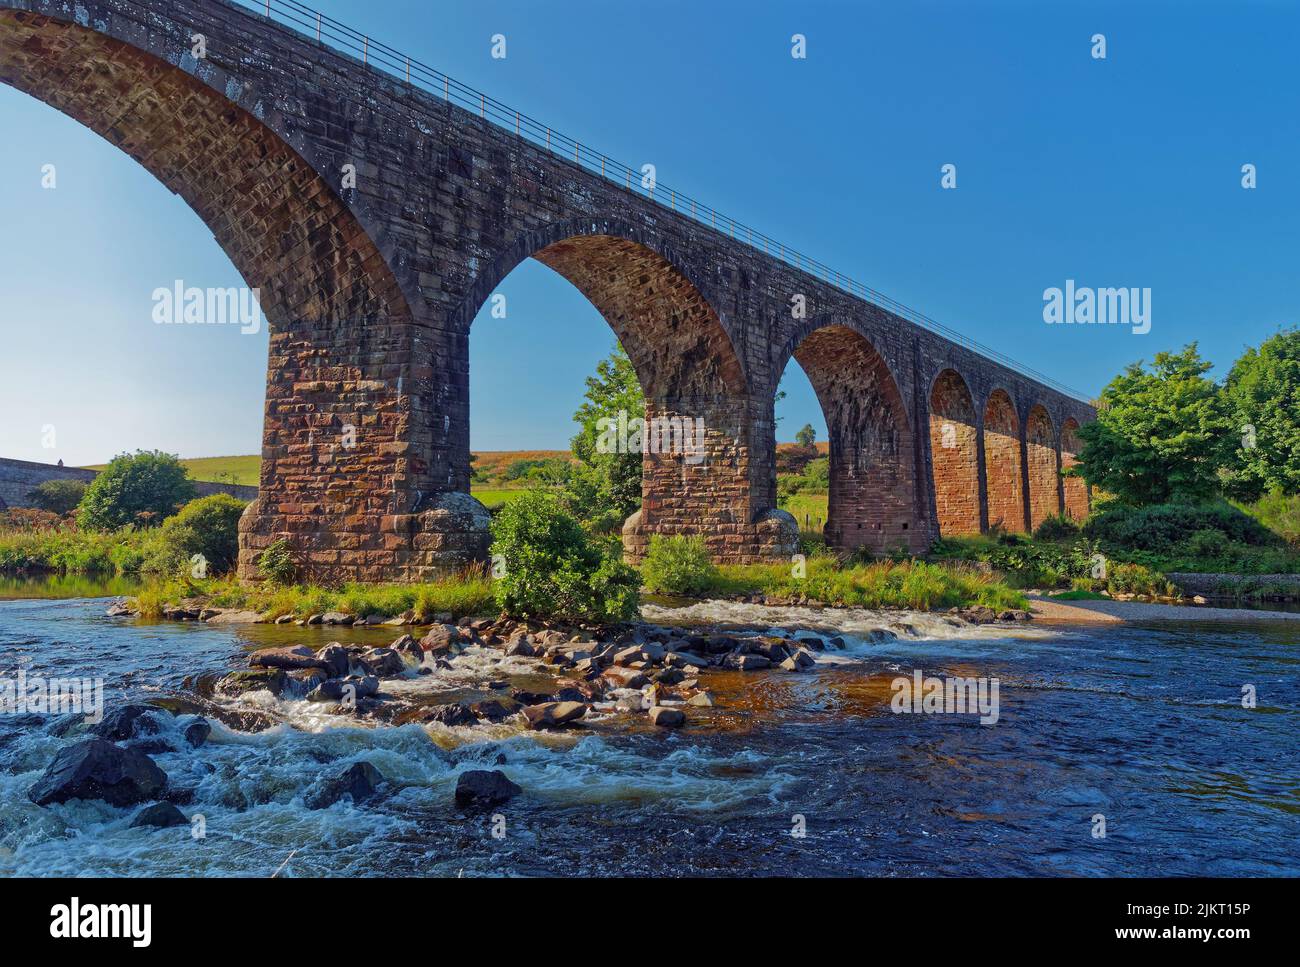 Los arcos segmentarios de piedra del viaducto de agua del norte que atraviesa el río Esk del norte cerca de la ciudad de St Cyrus en Aberdeenshire. Foto de stock